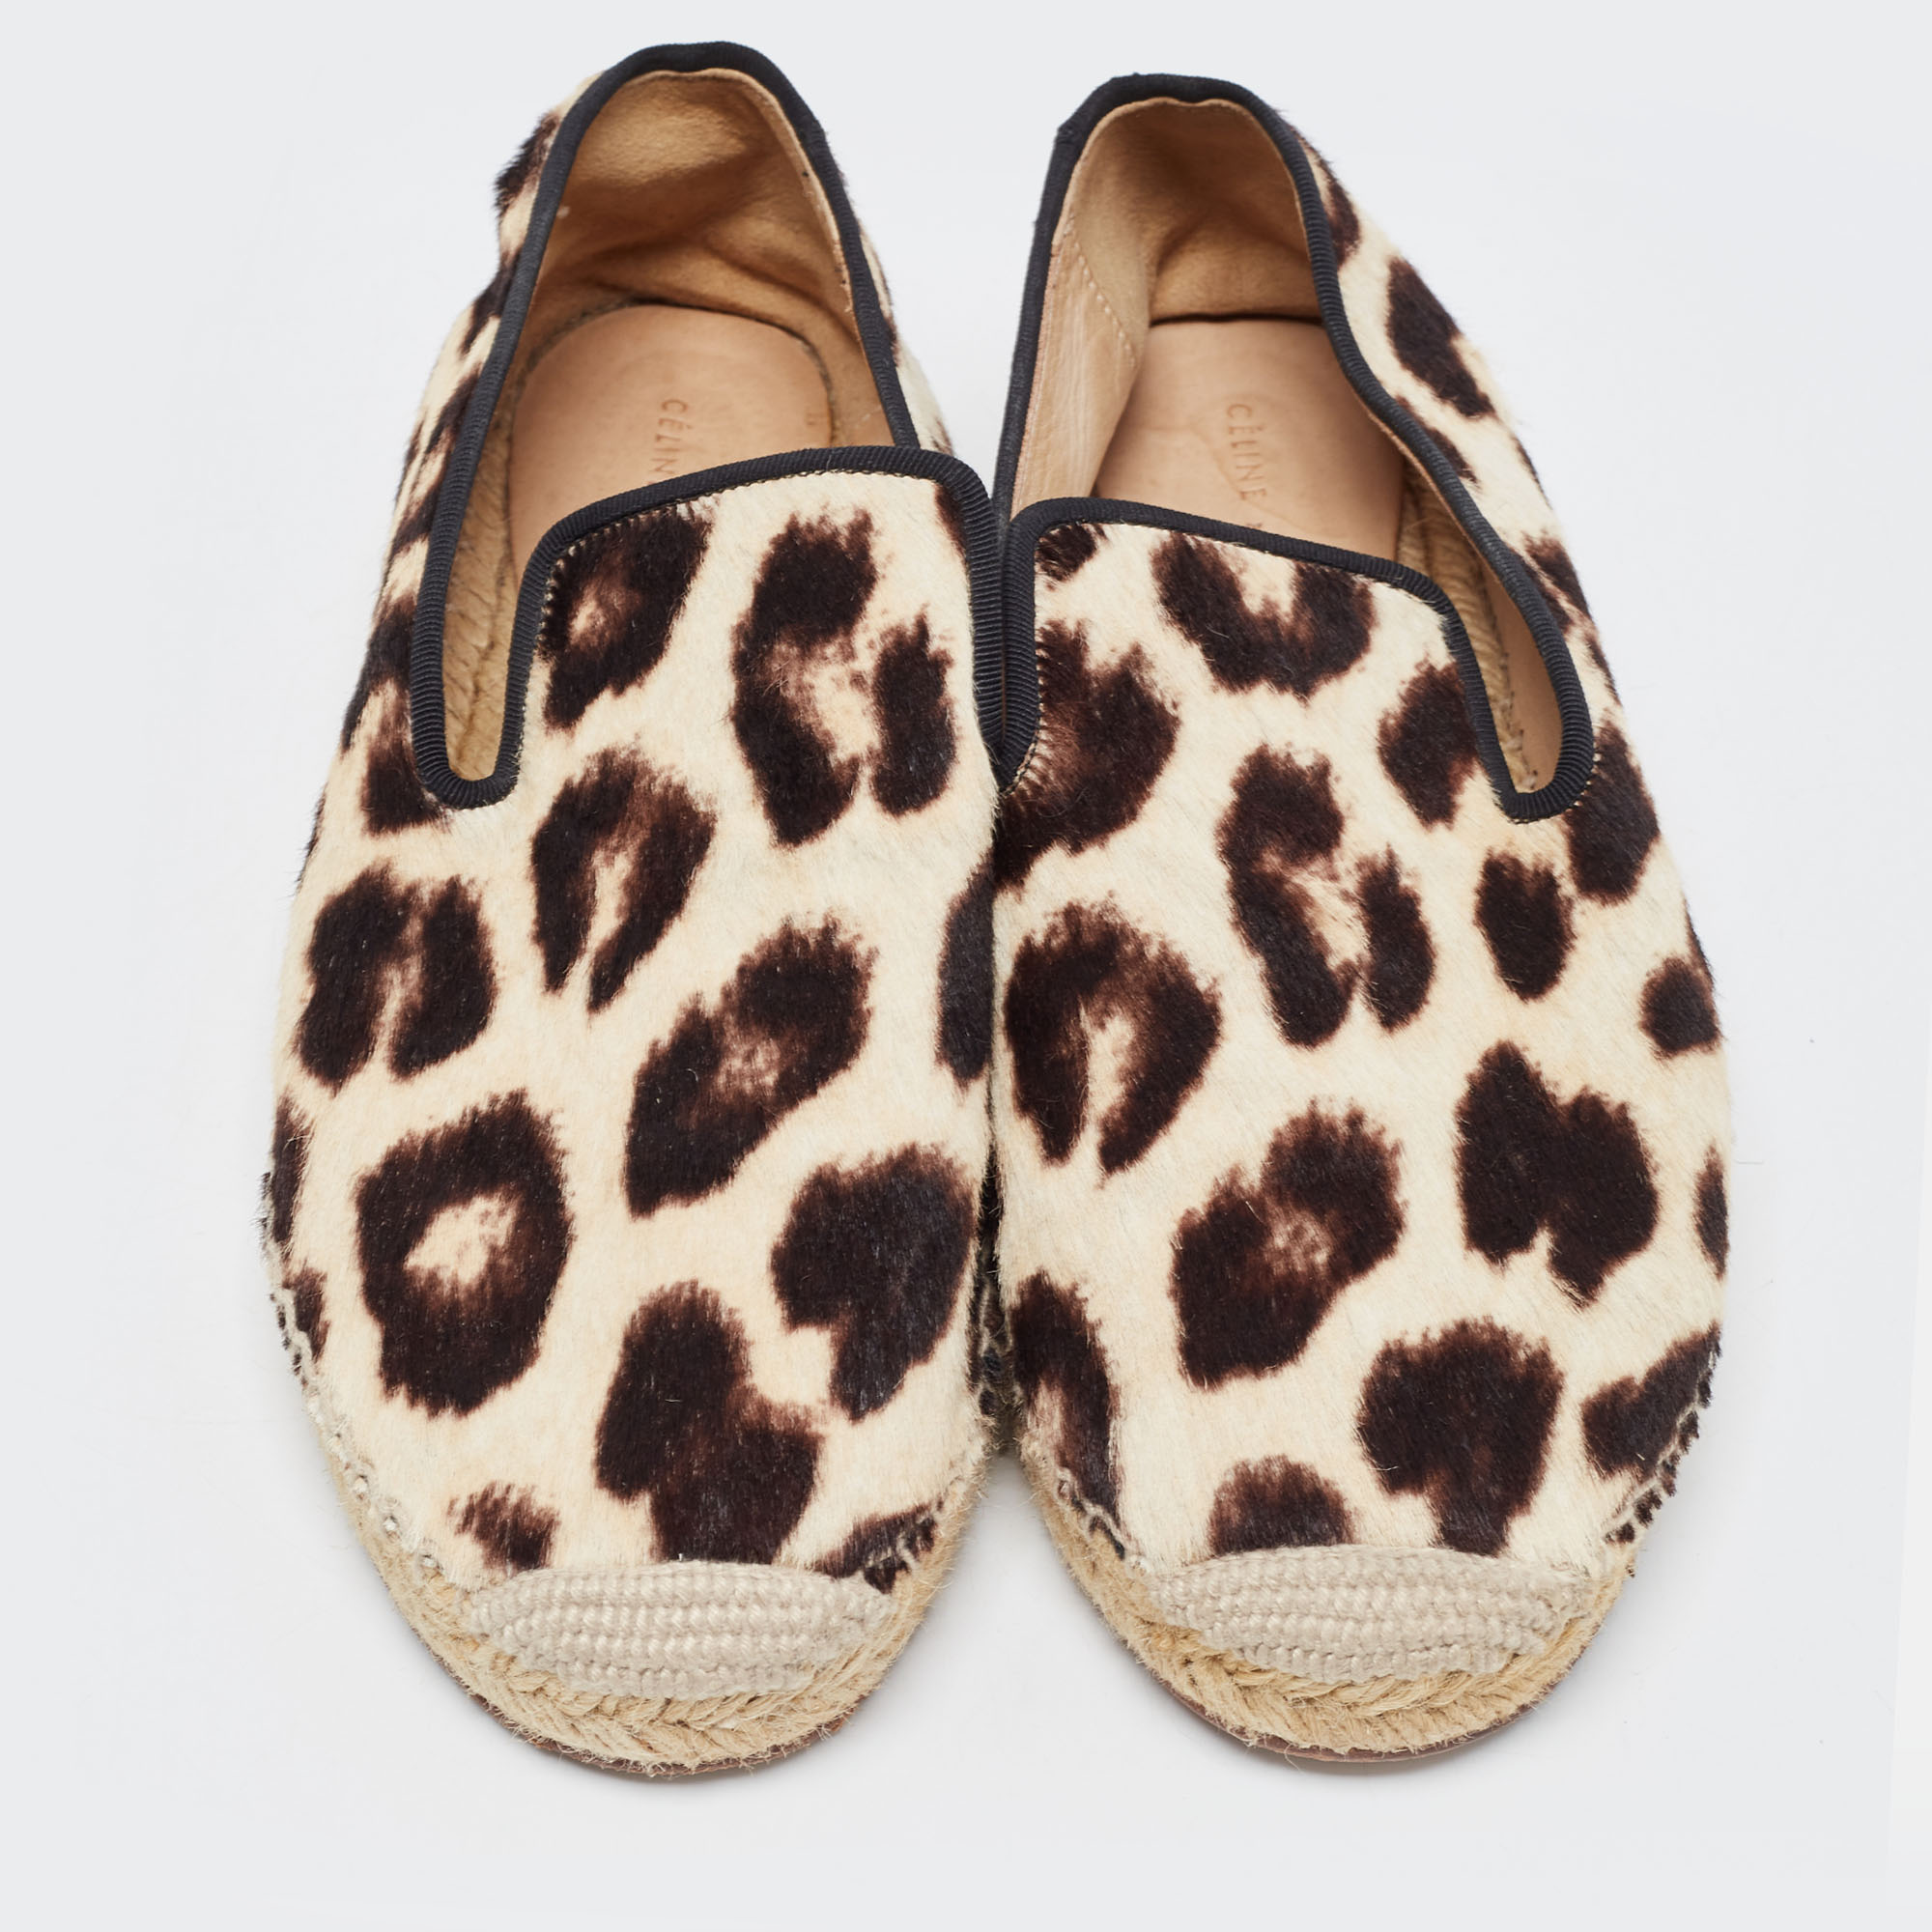 Celine Beige/Brown Leopard Print Calfhair Espadrilles Flats Size 38